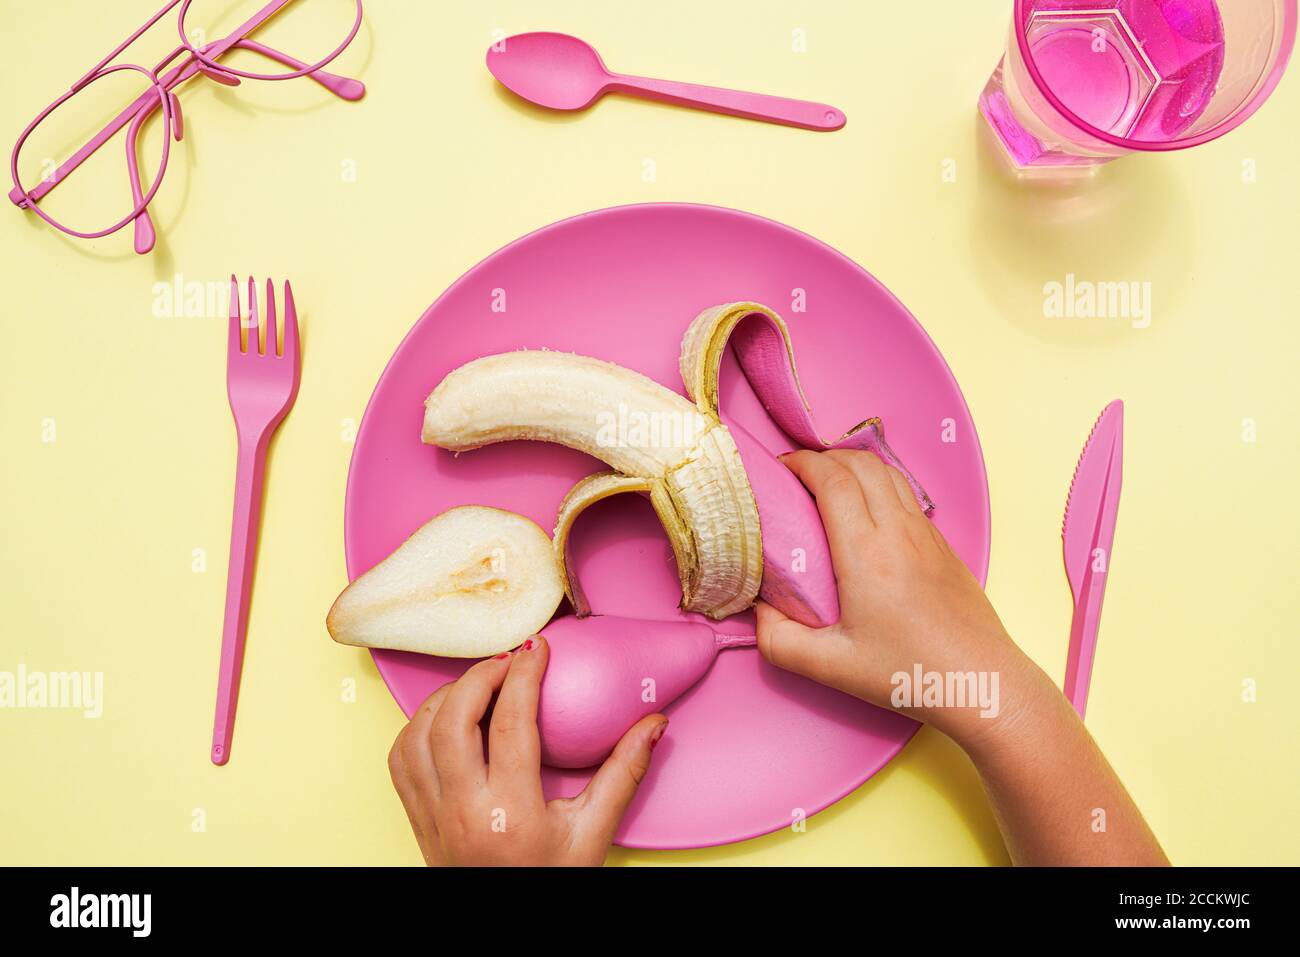 Main de bébé fille de ramasser la poire et la banane de couleur rose de la plaque en plastique Banque D'Images